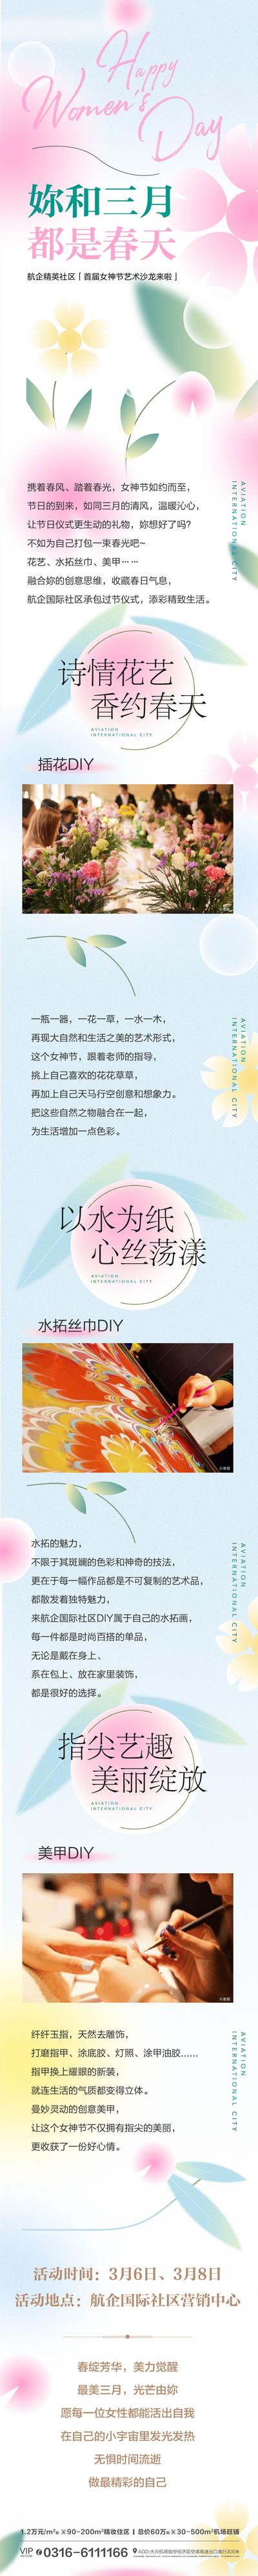 南门网 海报 长图 地产 女神节 妇女节 暖场活动 预告 插花 水拓丝巾 美甲